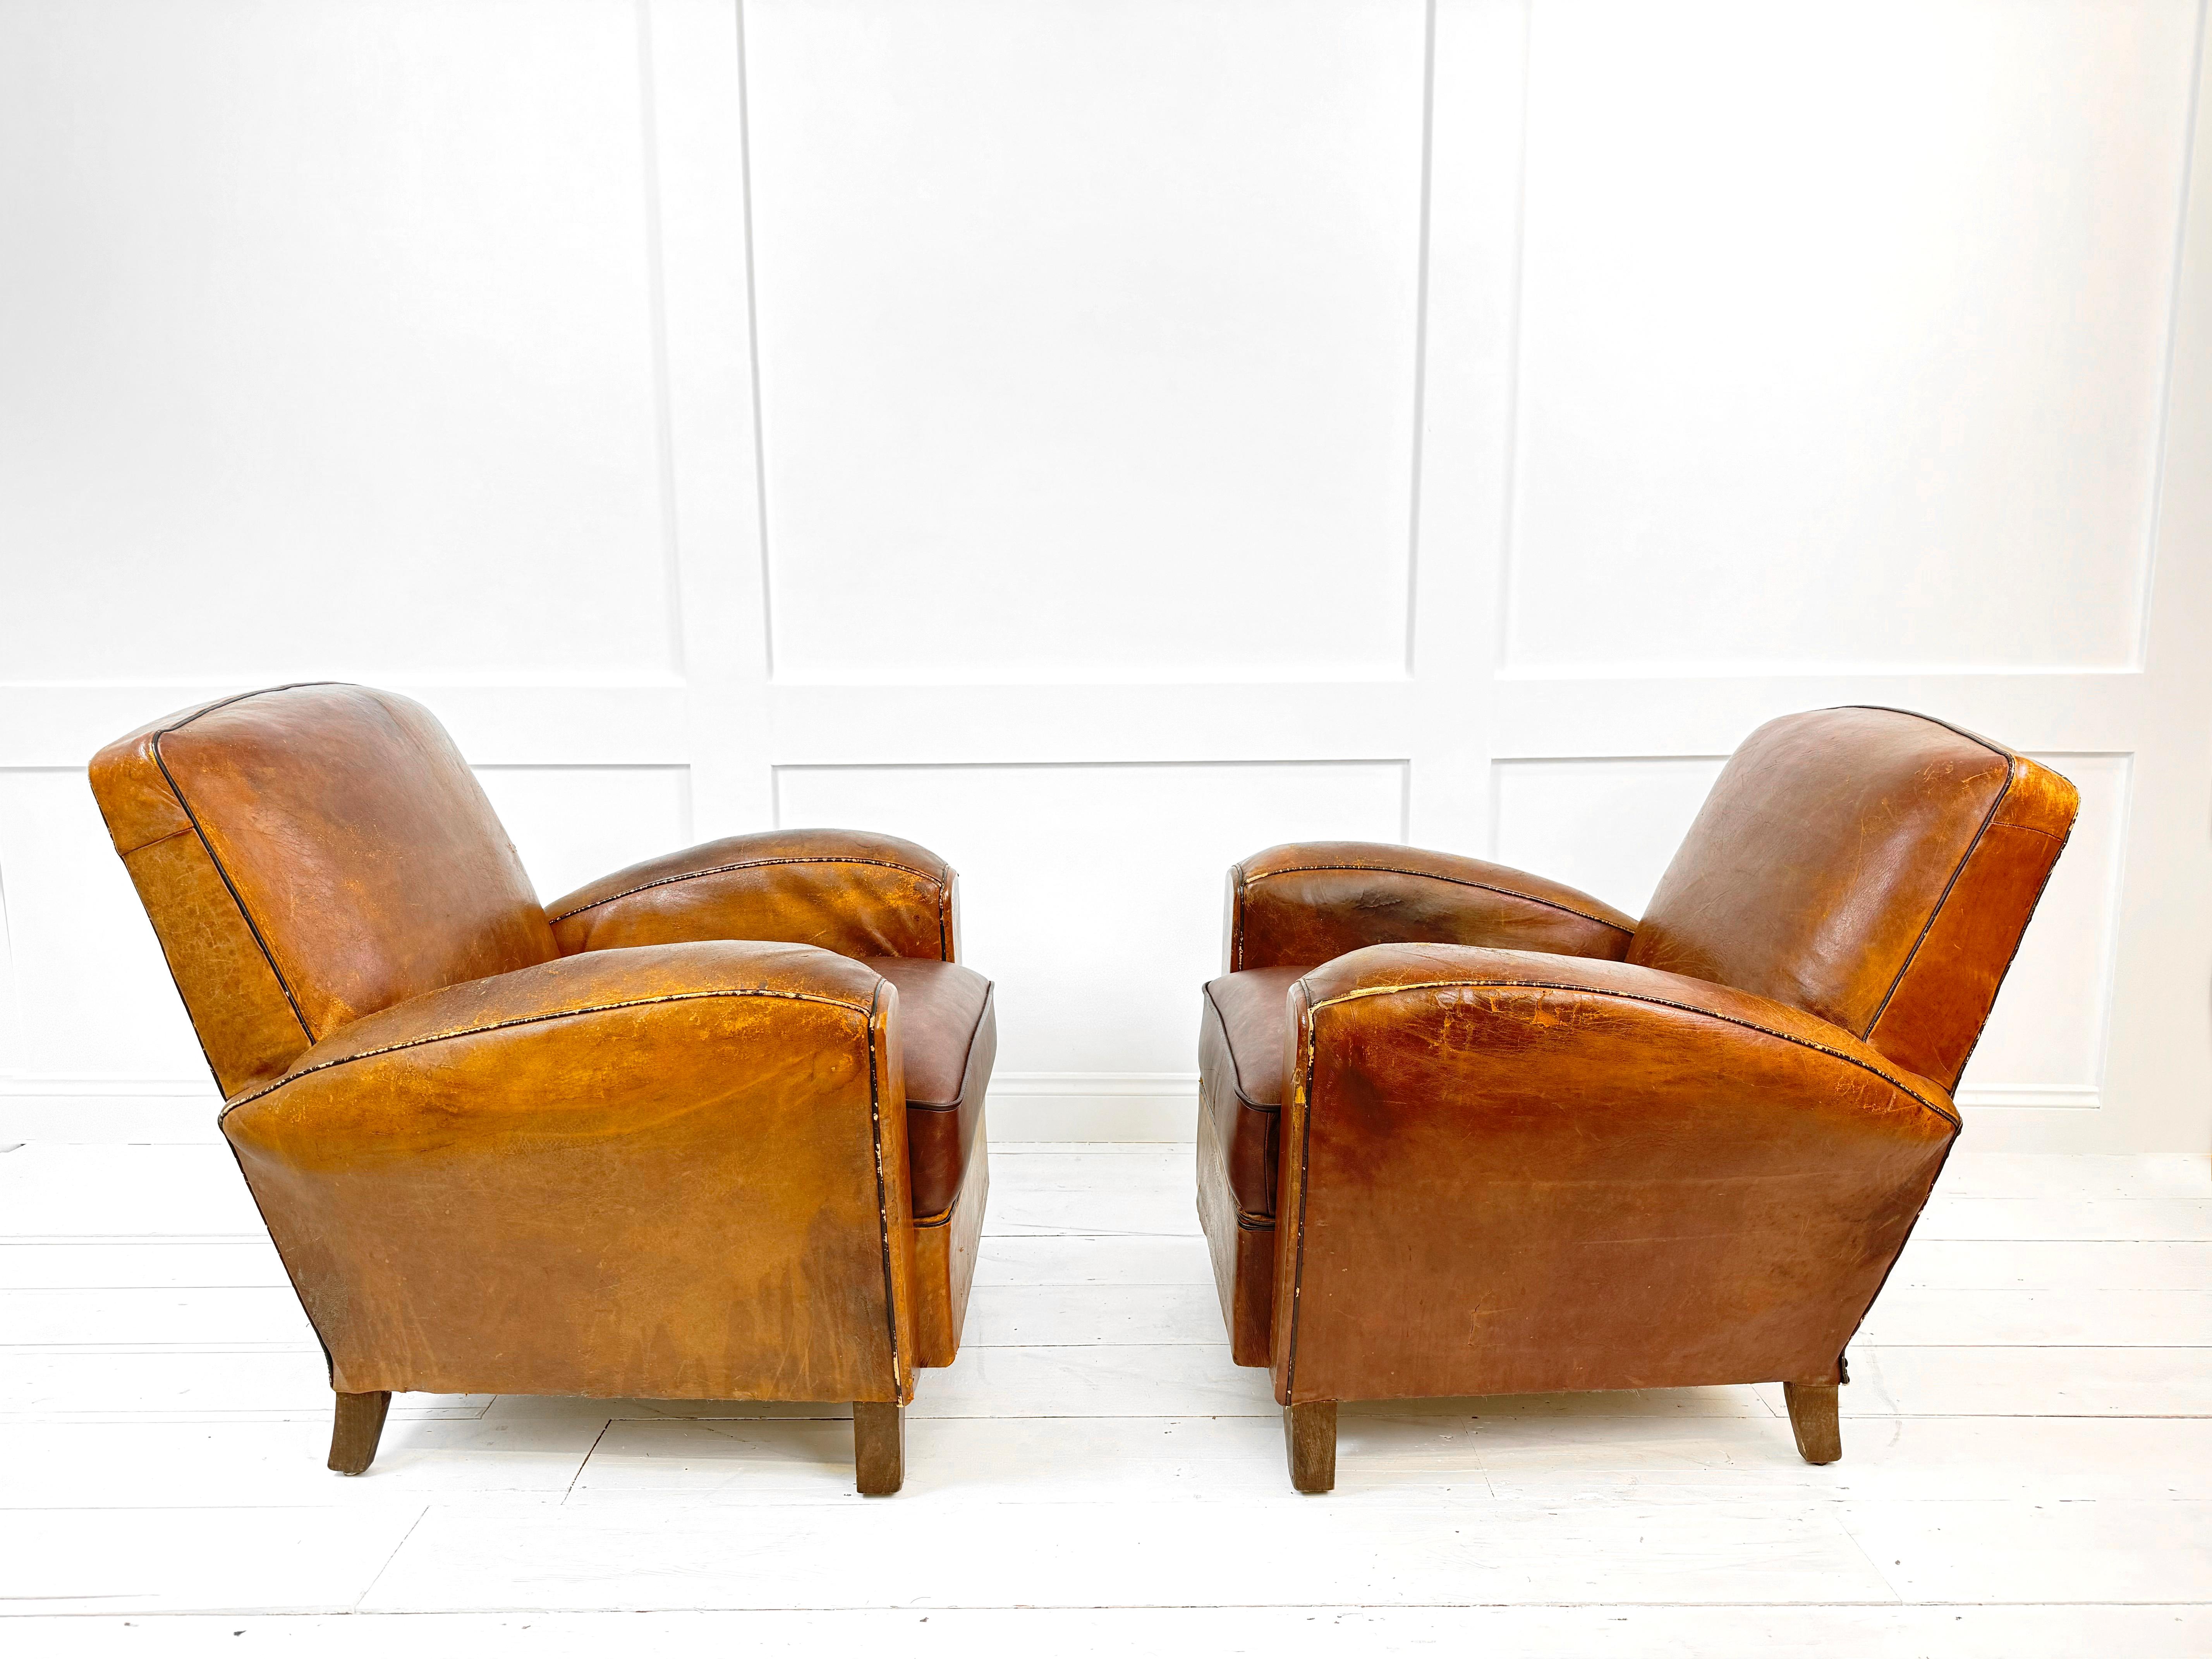 La quintessence du style Art déco français - les fauteuils club en cuir fauve des années 1930. Cette paire de fauteuils exquis respire le luxe et la sophistication, mettant en valeur l'élégance de l'époque. Fabriquées à partir du cuir tan le plus